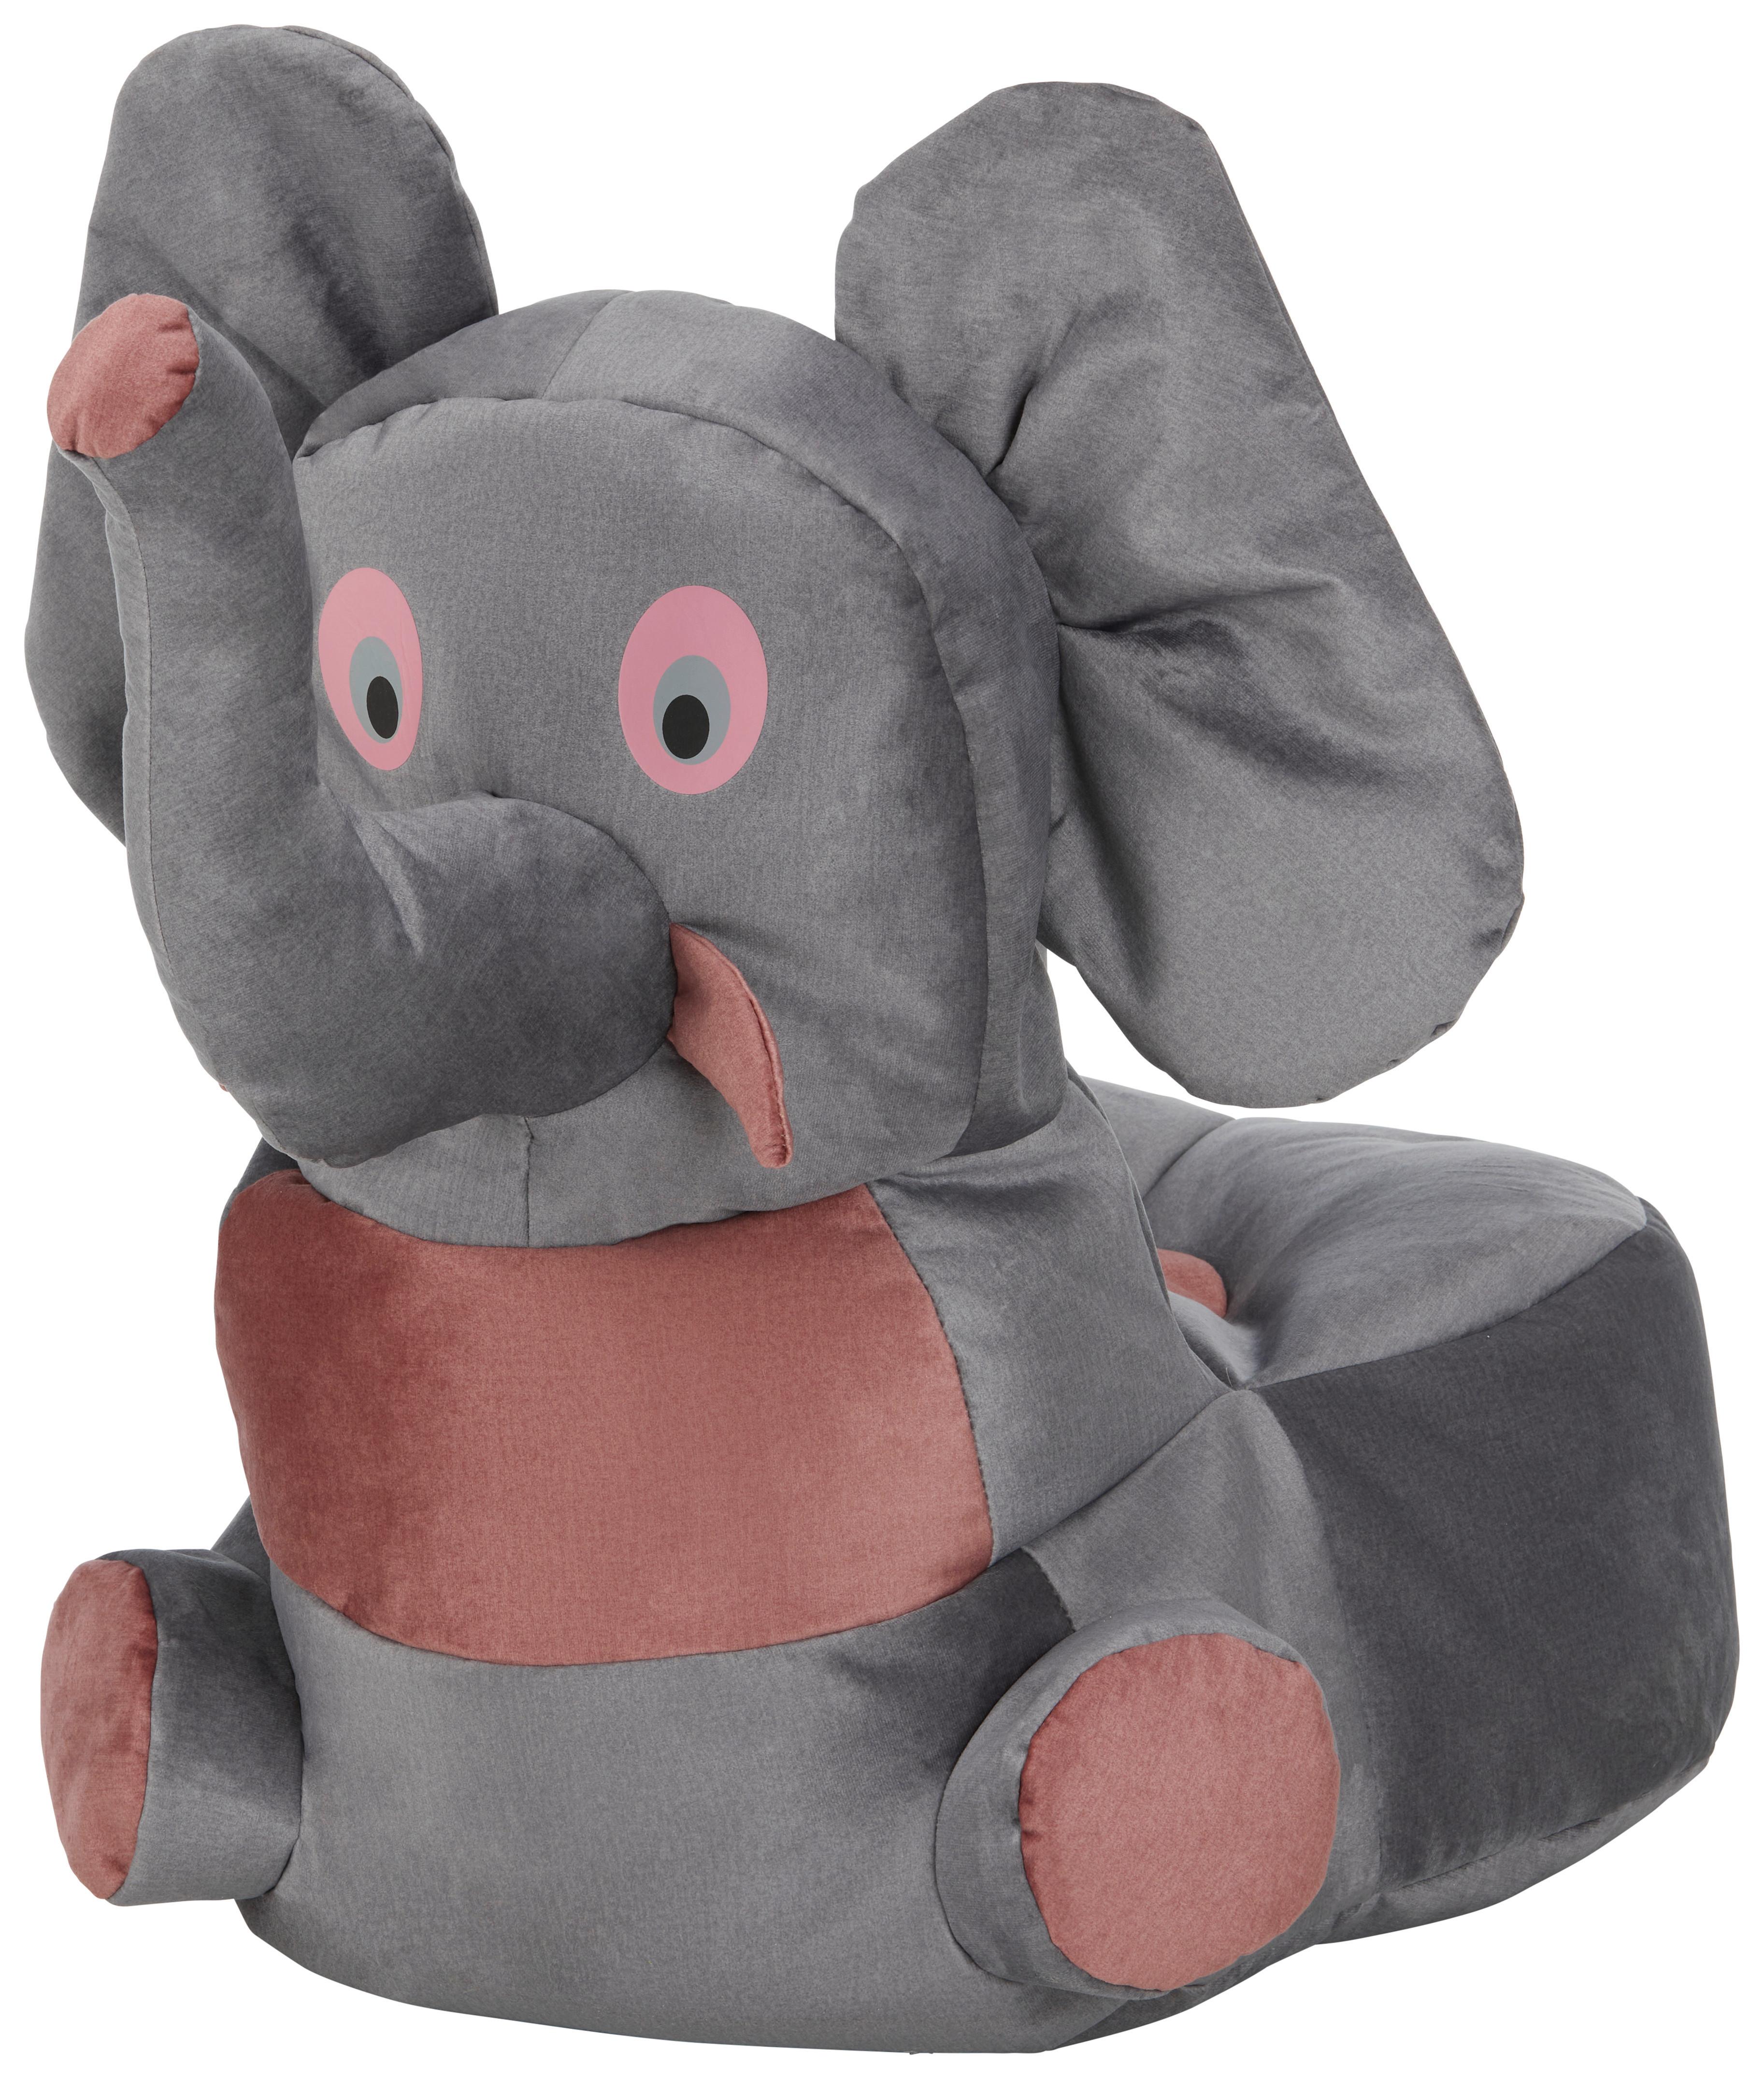 Dětksé Křeslo Elephant - šedá/růžová, textil (55/80/75cm) - Modern Living